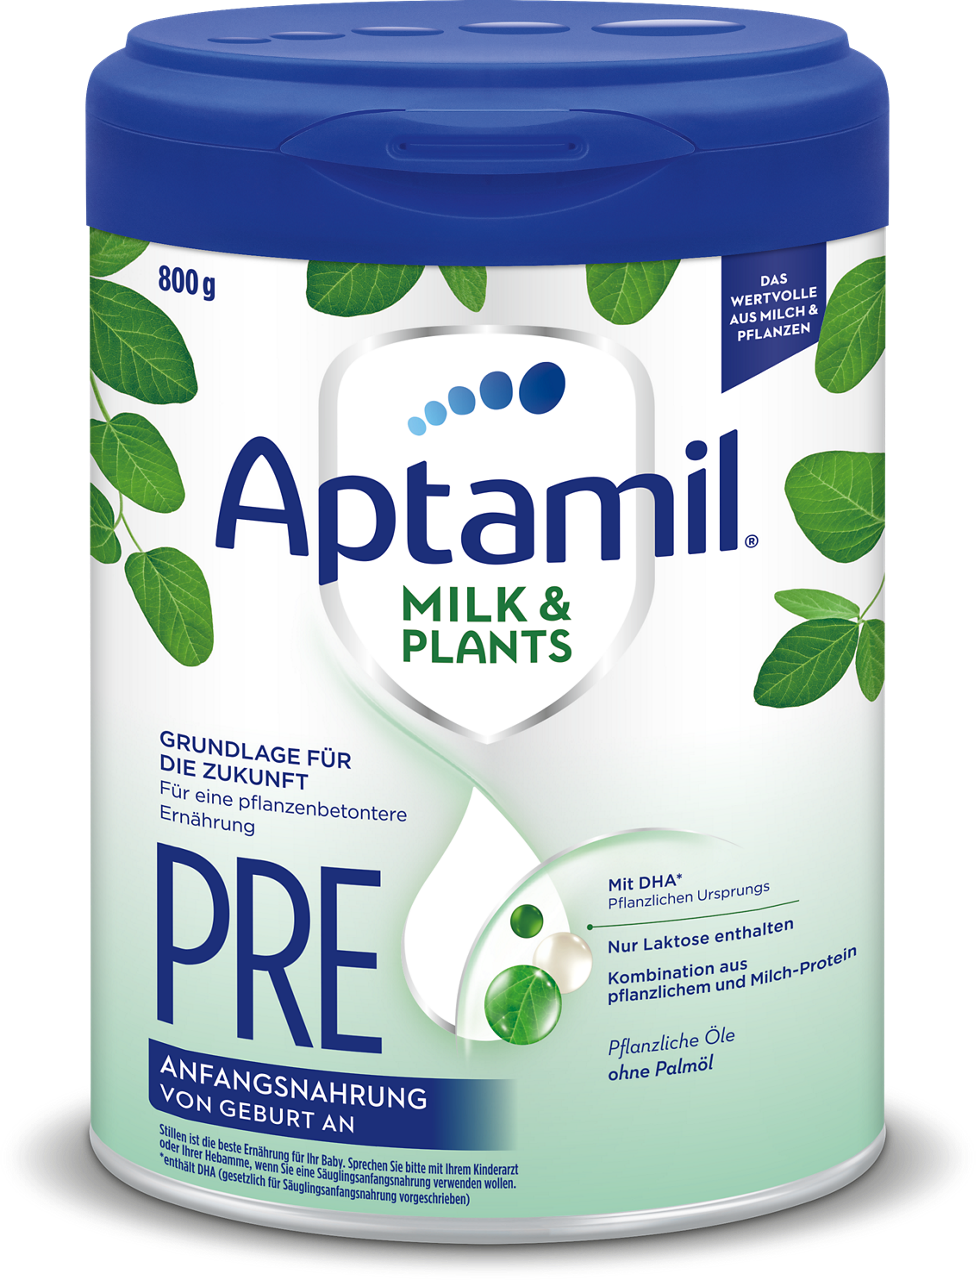 da-am-milk-and-plants-pre-800g-4056631003619-0722-fop-s